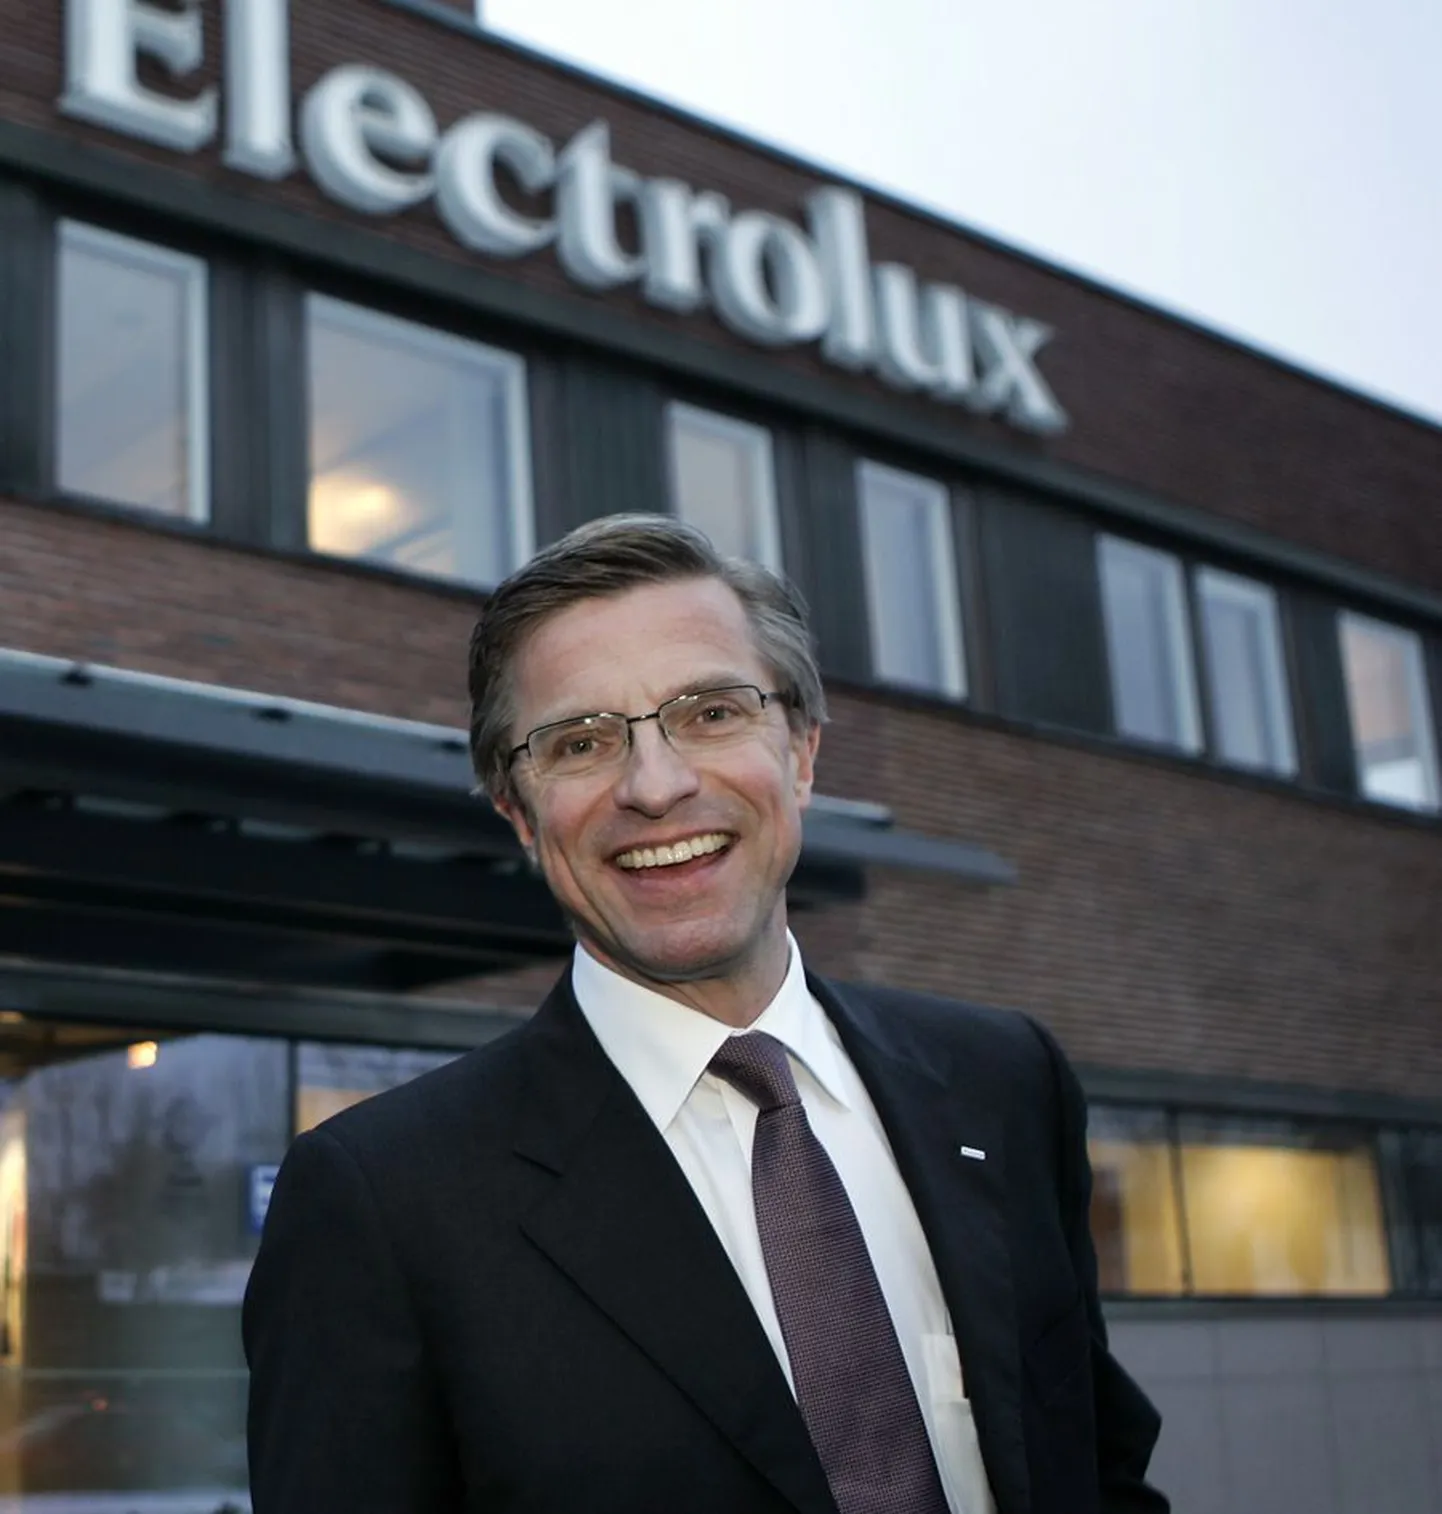 Maailma üks suuremaid majapidamisseadmete tootjaid Electrolux kaotas kahe aasta jooksul 3000 töökohta. Ettevõtte juht Hans Stråberg (pildil) kinnitab, et nüüd lähevad asjad jälle ülesmäge.